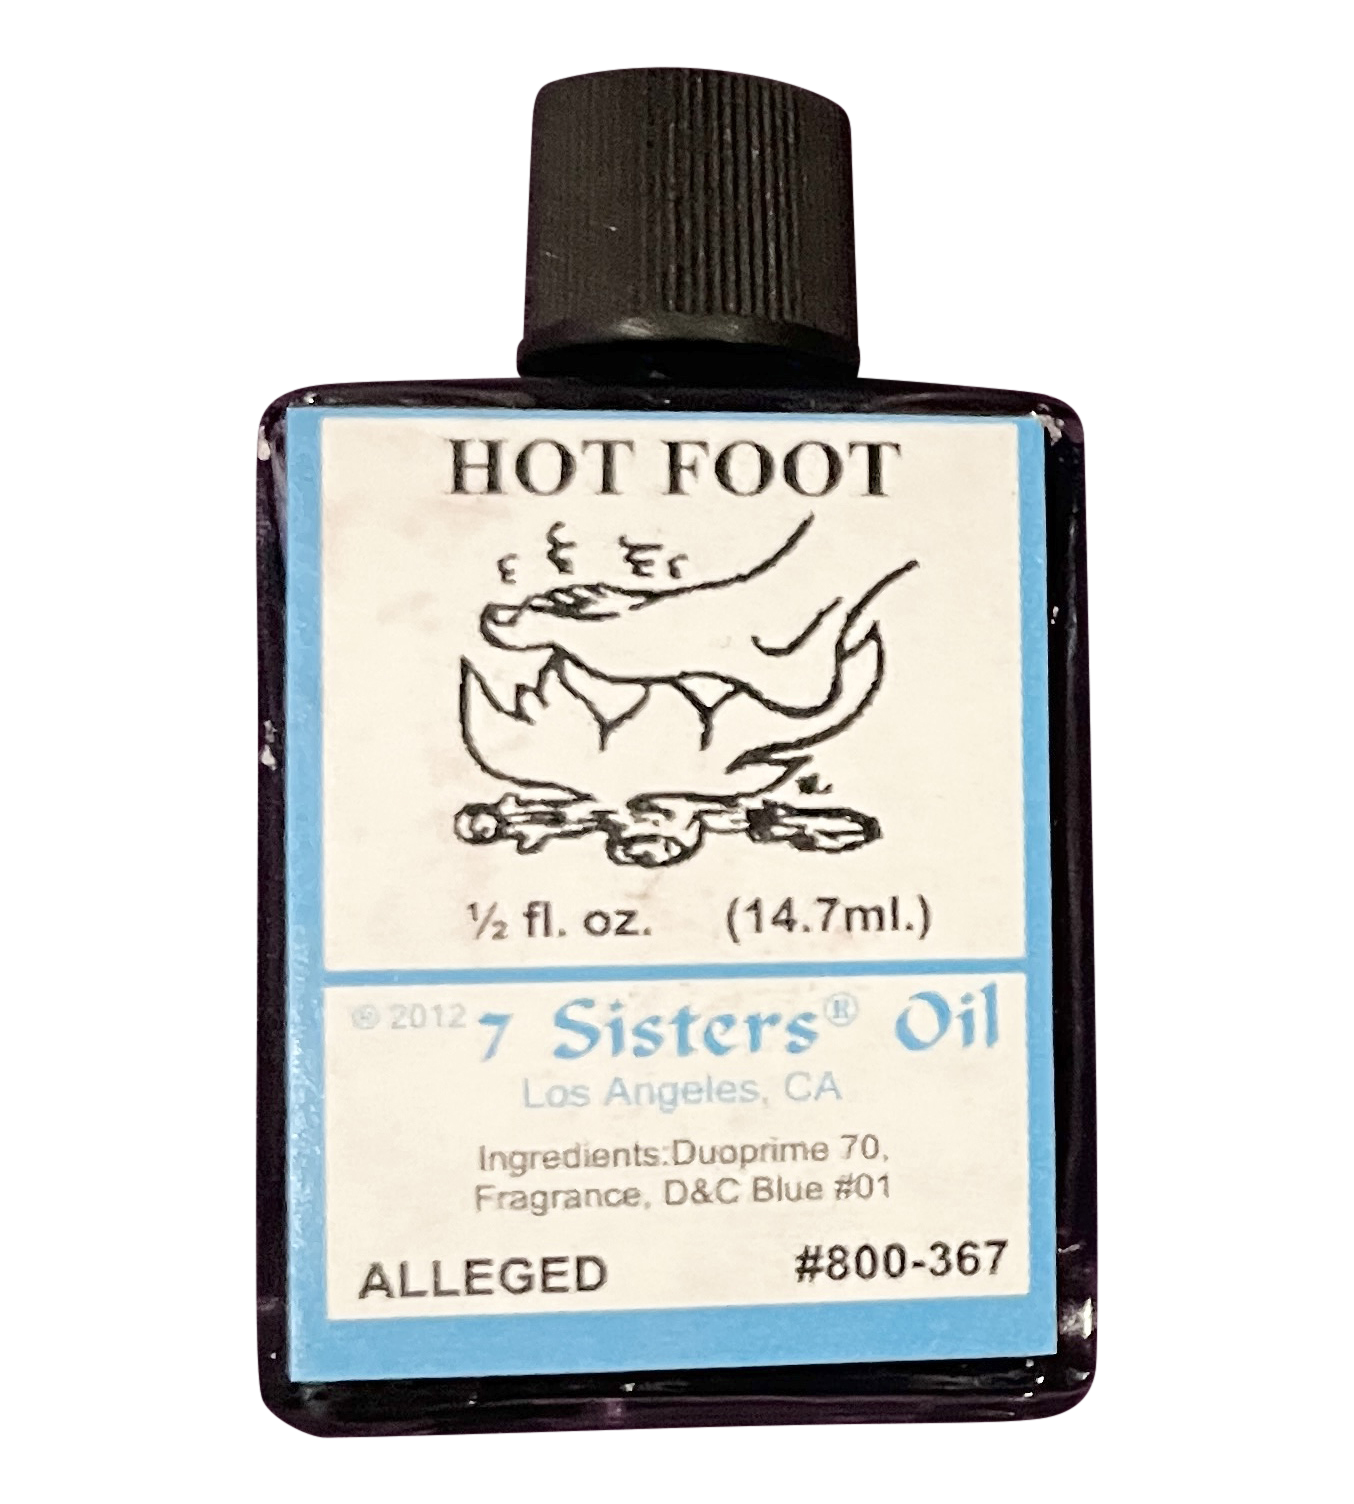 Hot Foot Oil